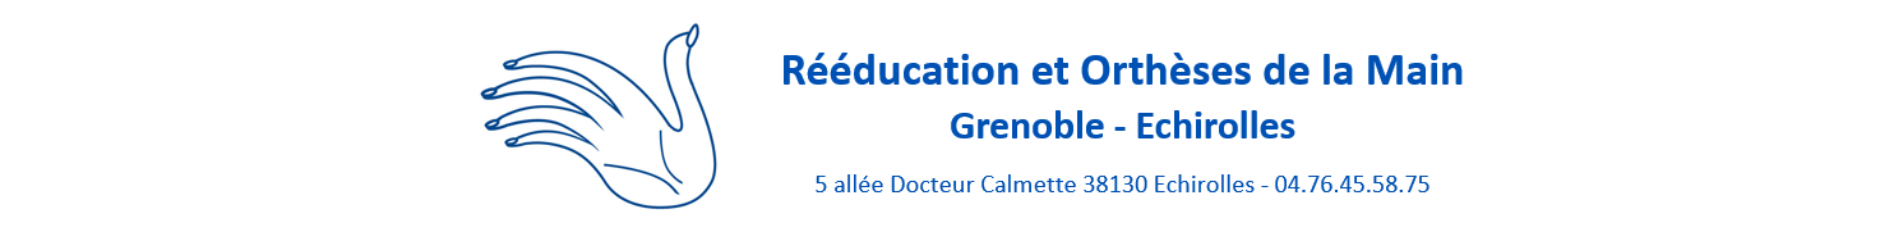 Denis GERLAC - Rééducation et Orthèses de la Main Grenoble - Echirolles